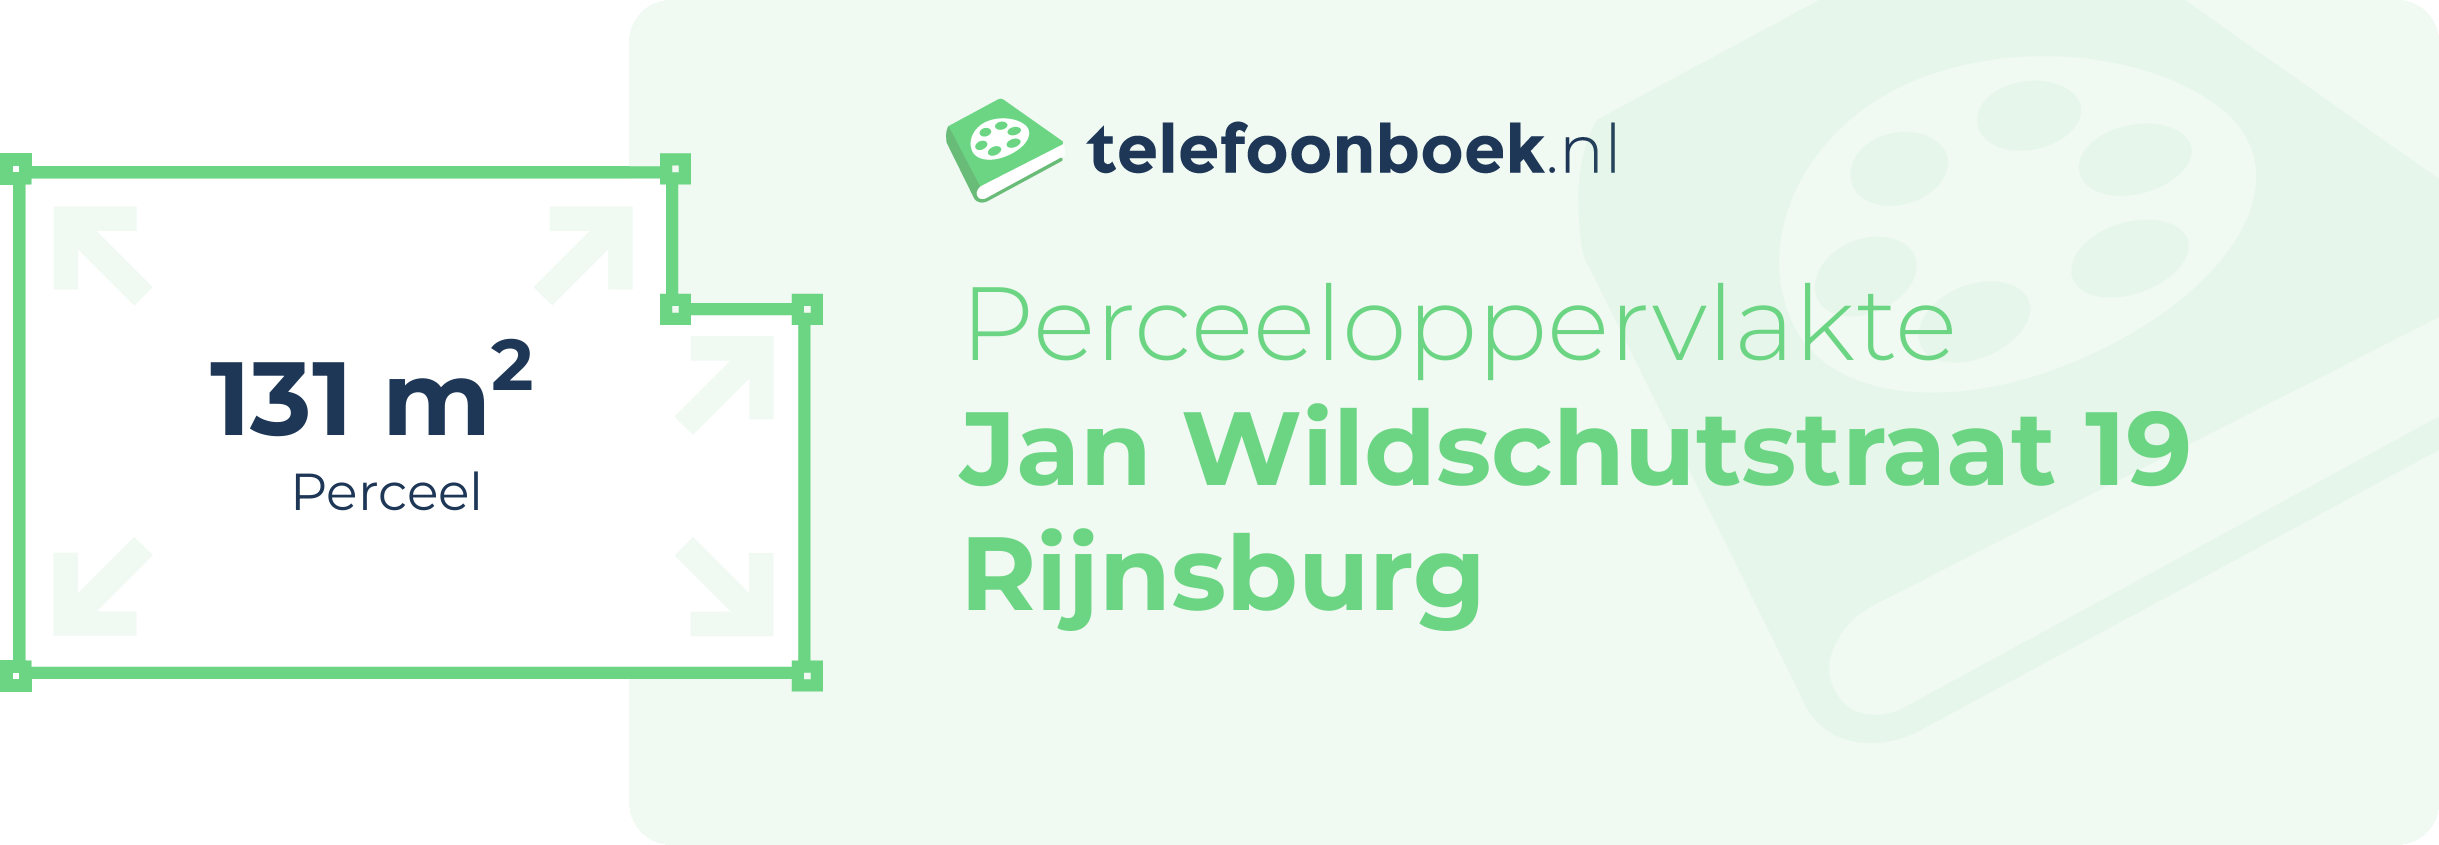 Perceeloppervlakte Jan Wildschutstraat 19 Rijnsburg